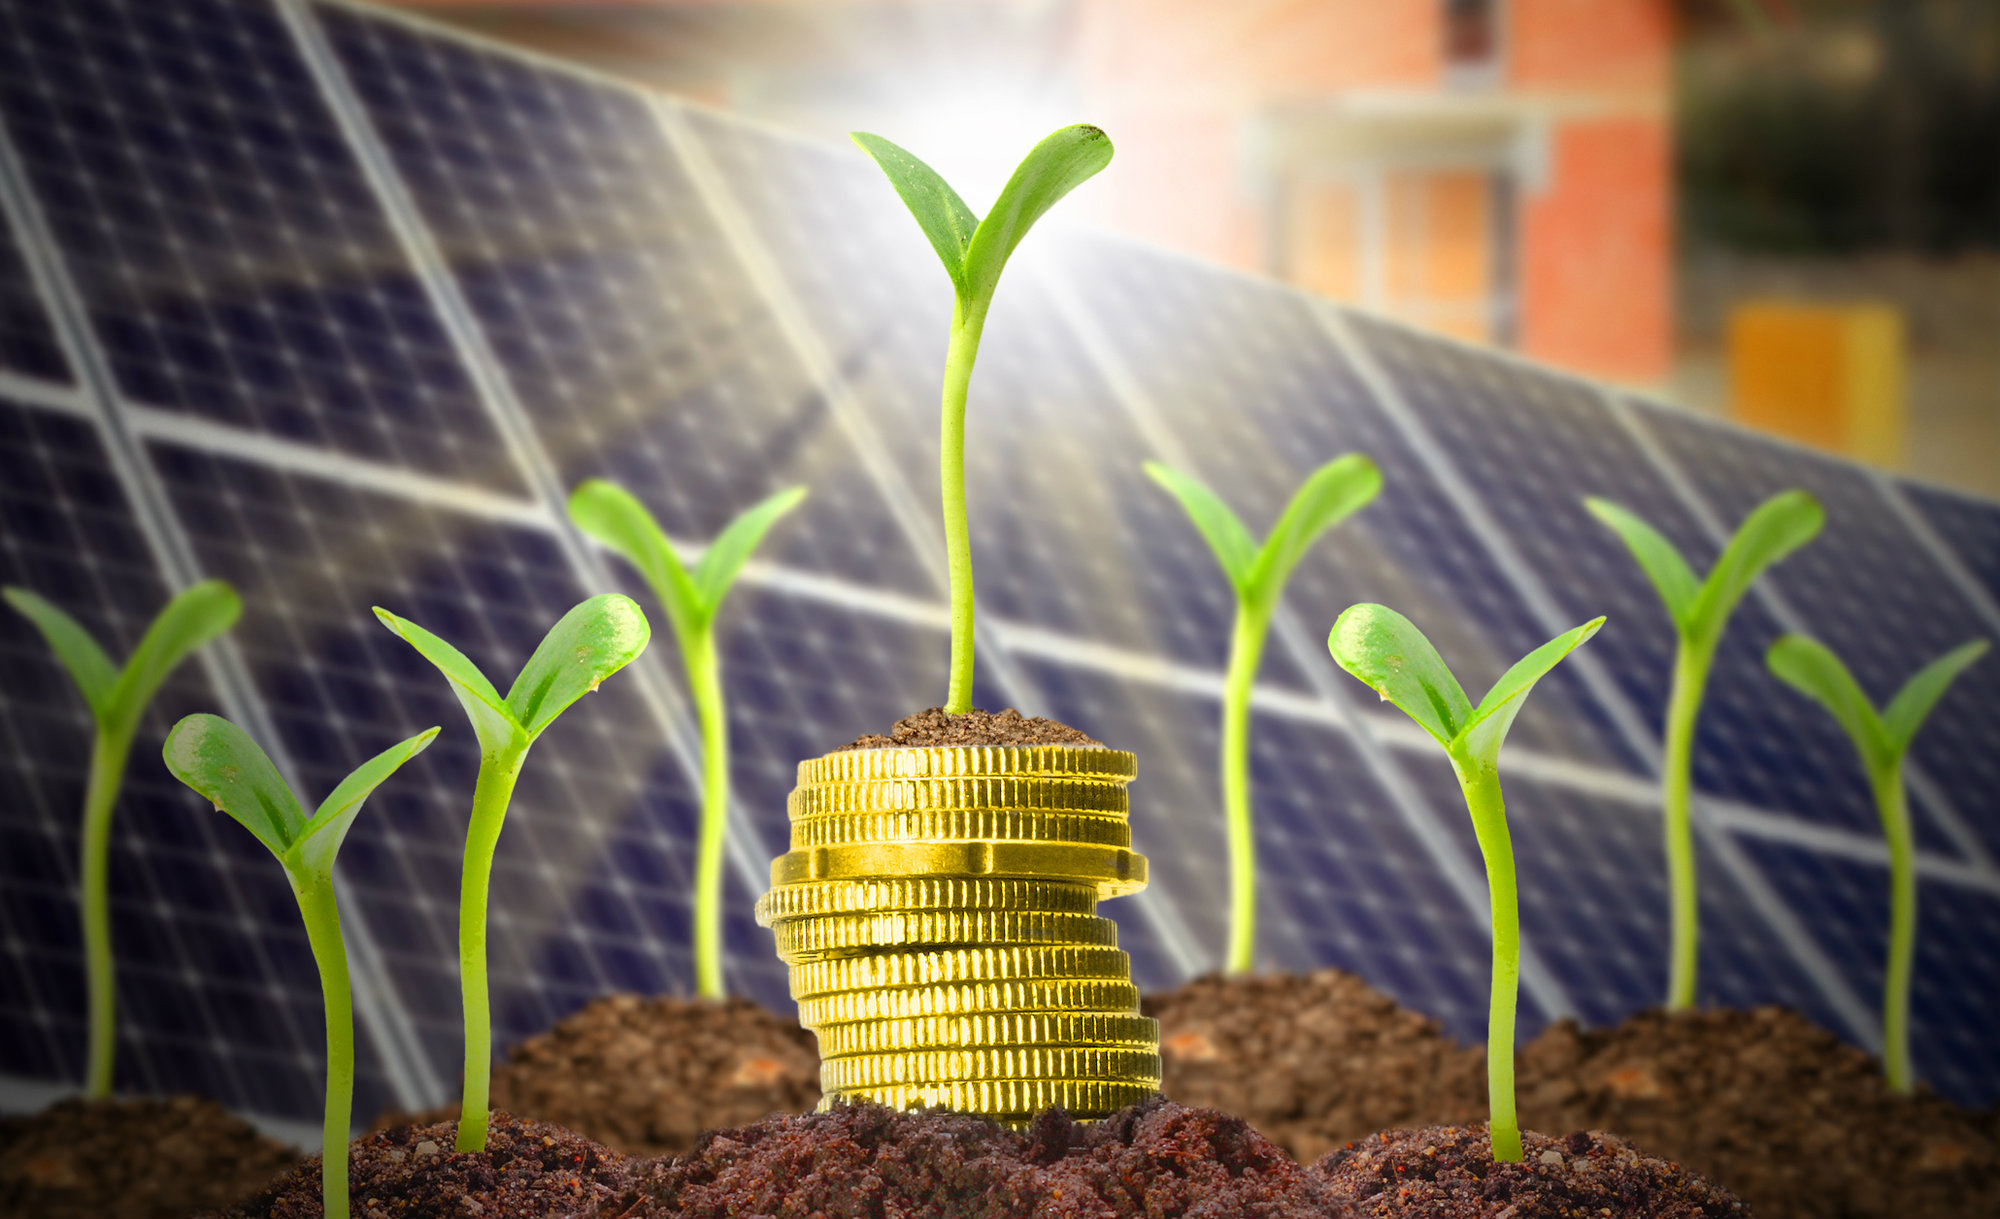 Financiamento de Energia Solar - WCOM Solar